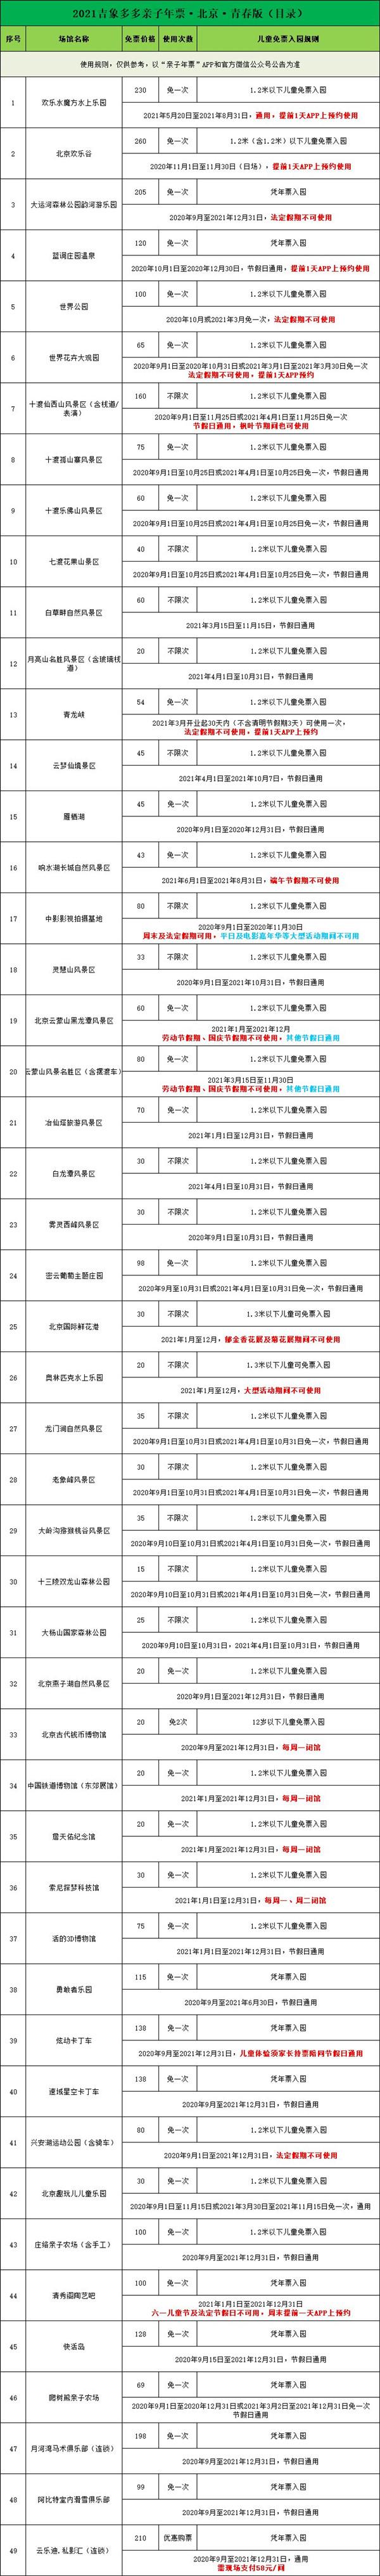 2020北京吉象多多年票标准版和青春版景区名单-使用指南